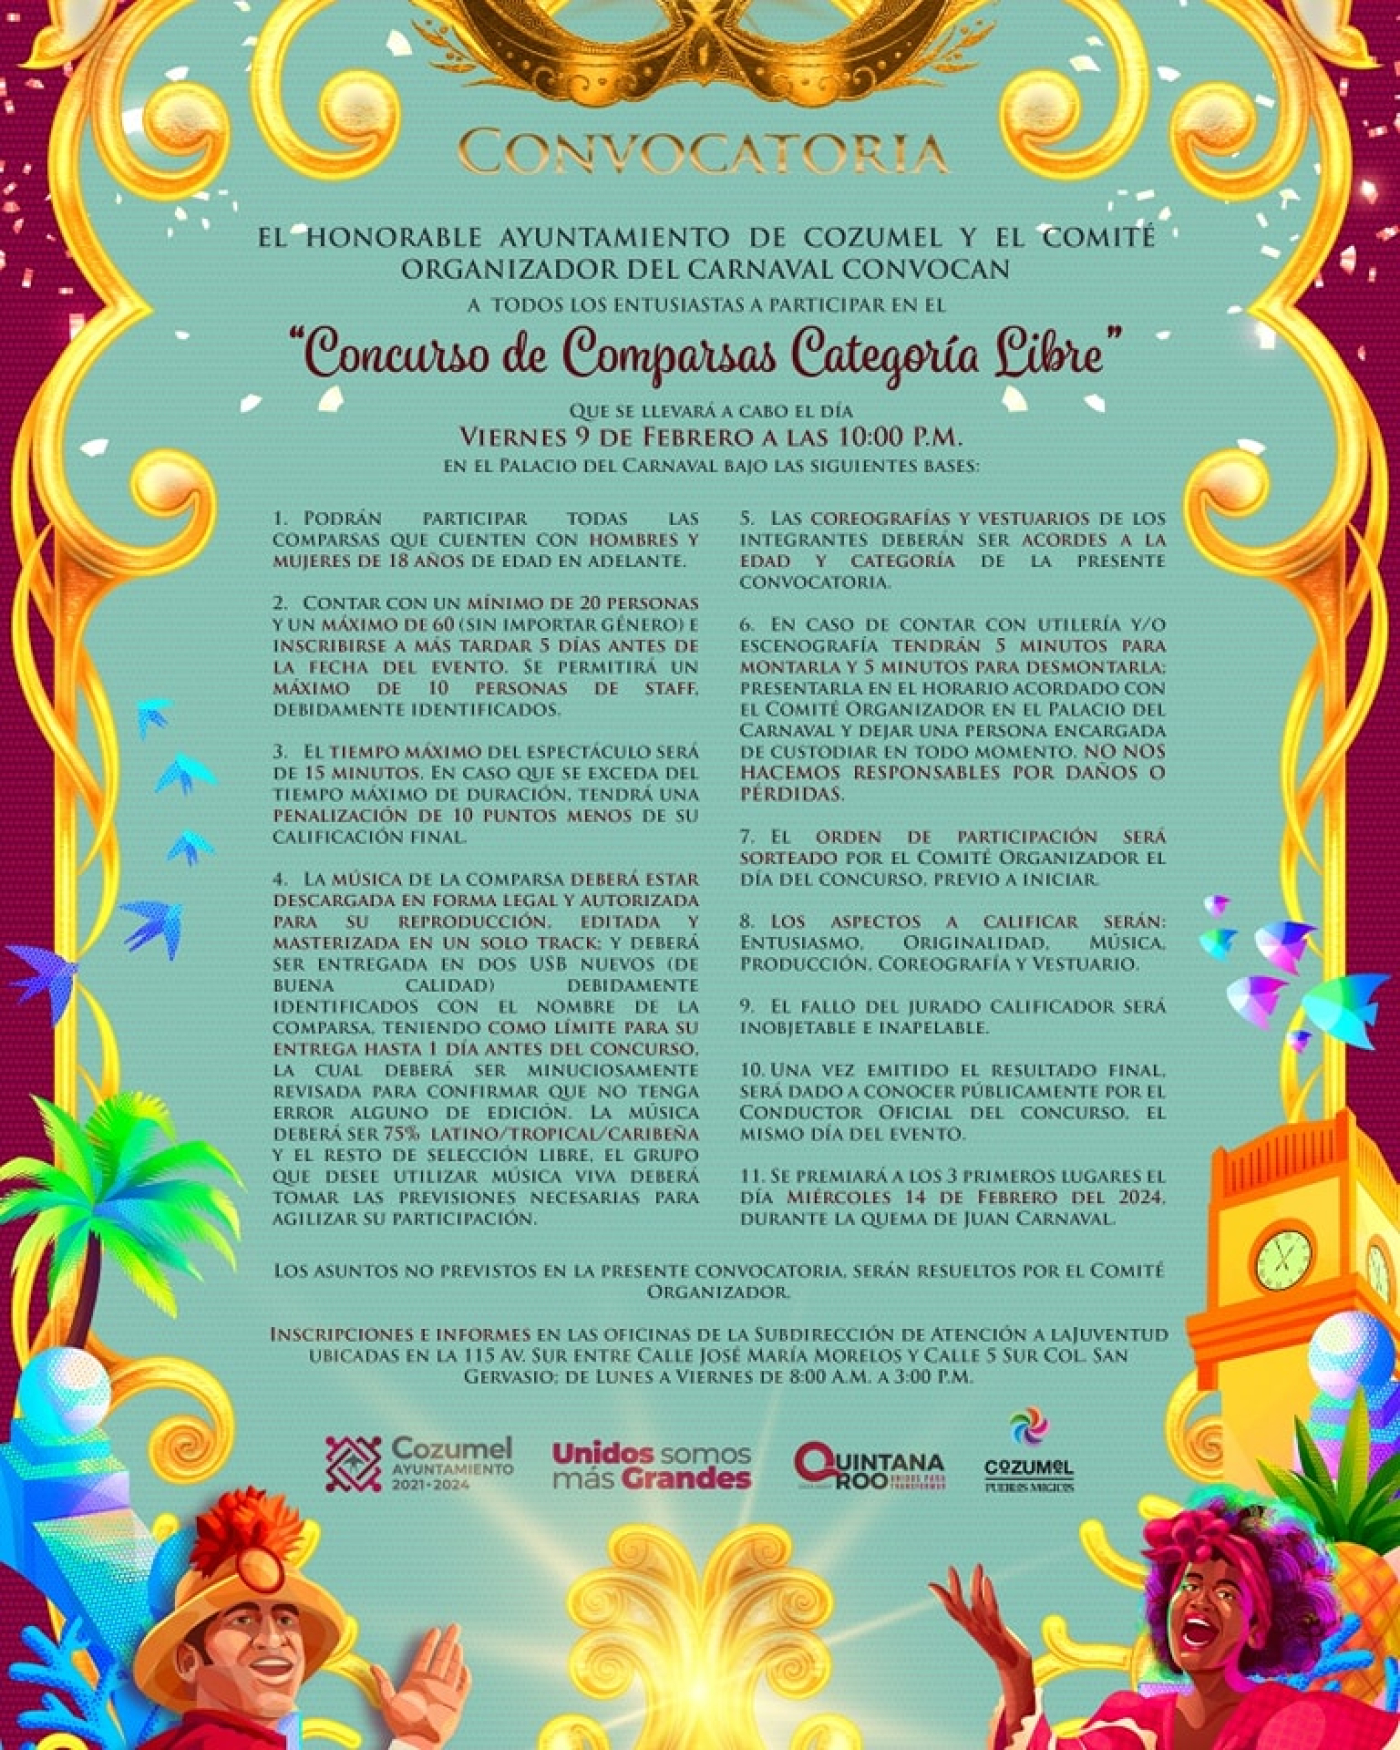 Comité del Carnaval abre convocatoria a la sociedad para el “Concurso de comparsas categoría libre”